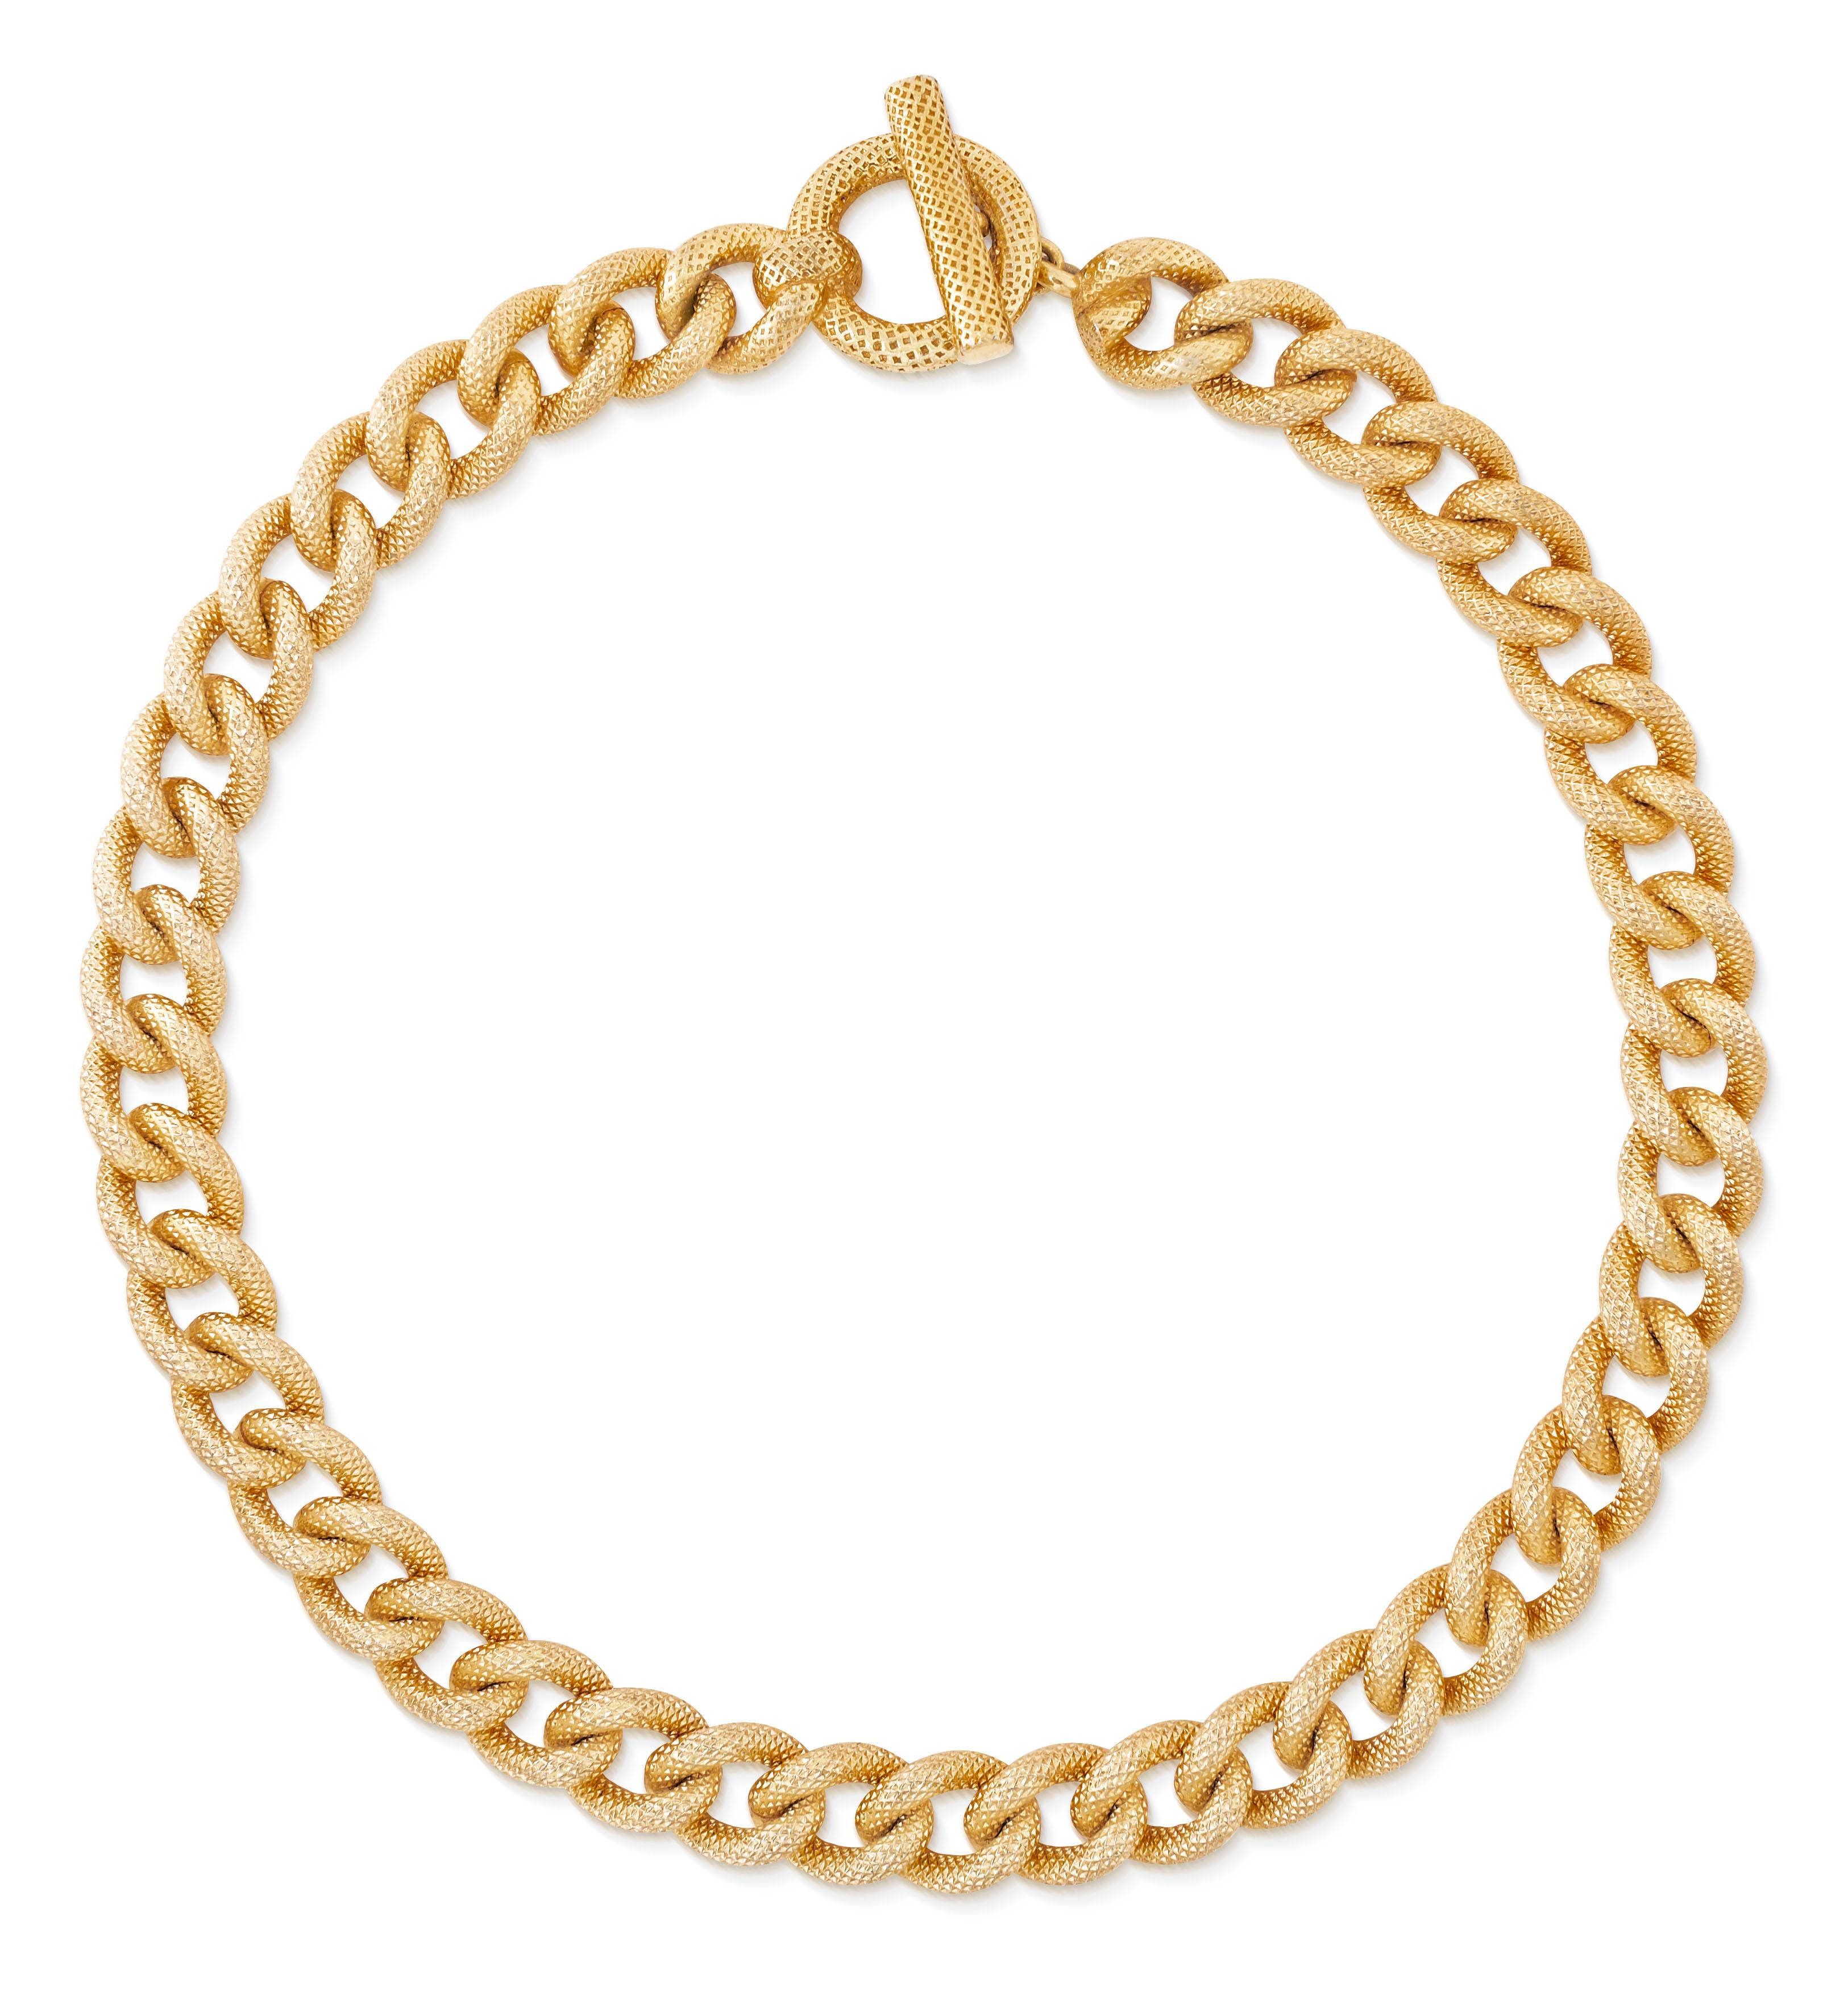 Vintage 1980 Christian Dior collier en chaîne texturée en plaqué or.  Ce collier présente des maillons massifs avec une texture unique en forme de diamant qui lui confère une finition semi-mate lustrée.  Fermeture à anneau et à bascule.

Longueur